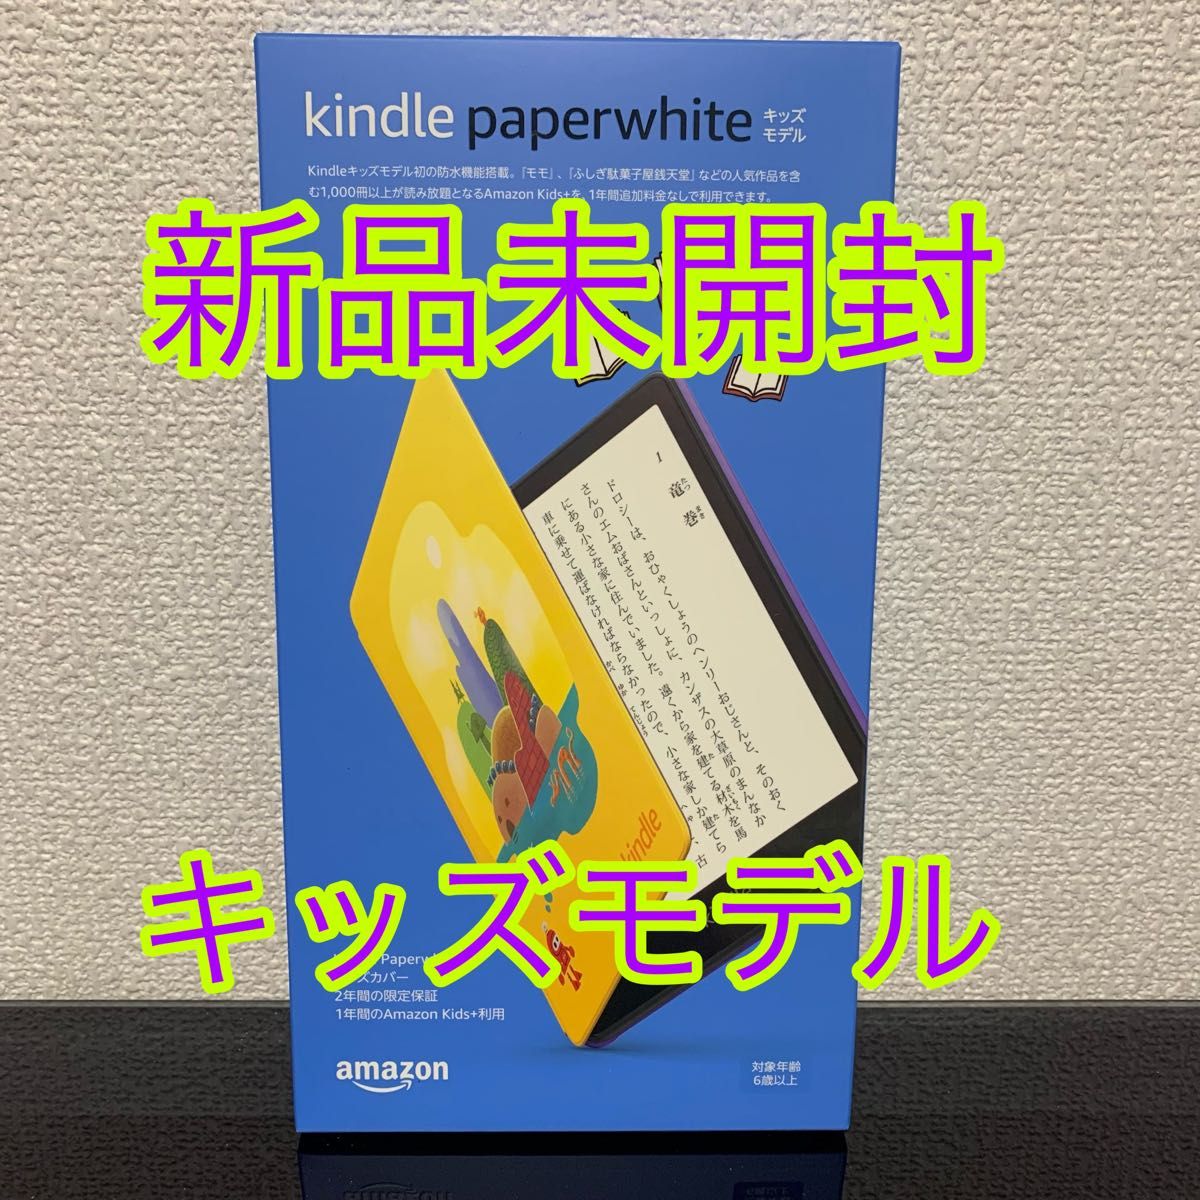 Kindle Paperwhite キッズモデル (ロボットドリームカバー)